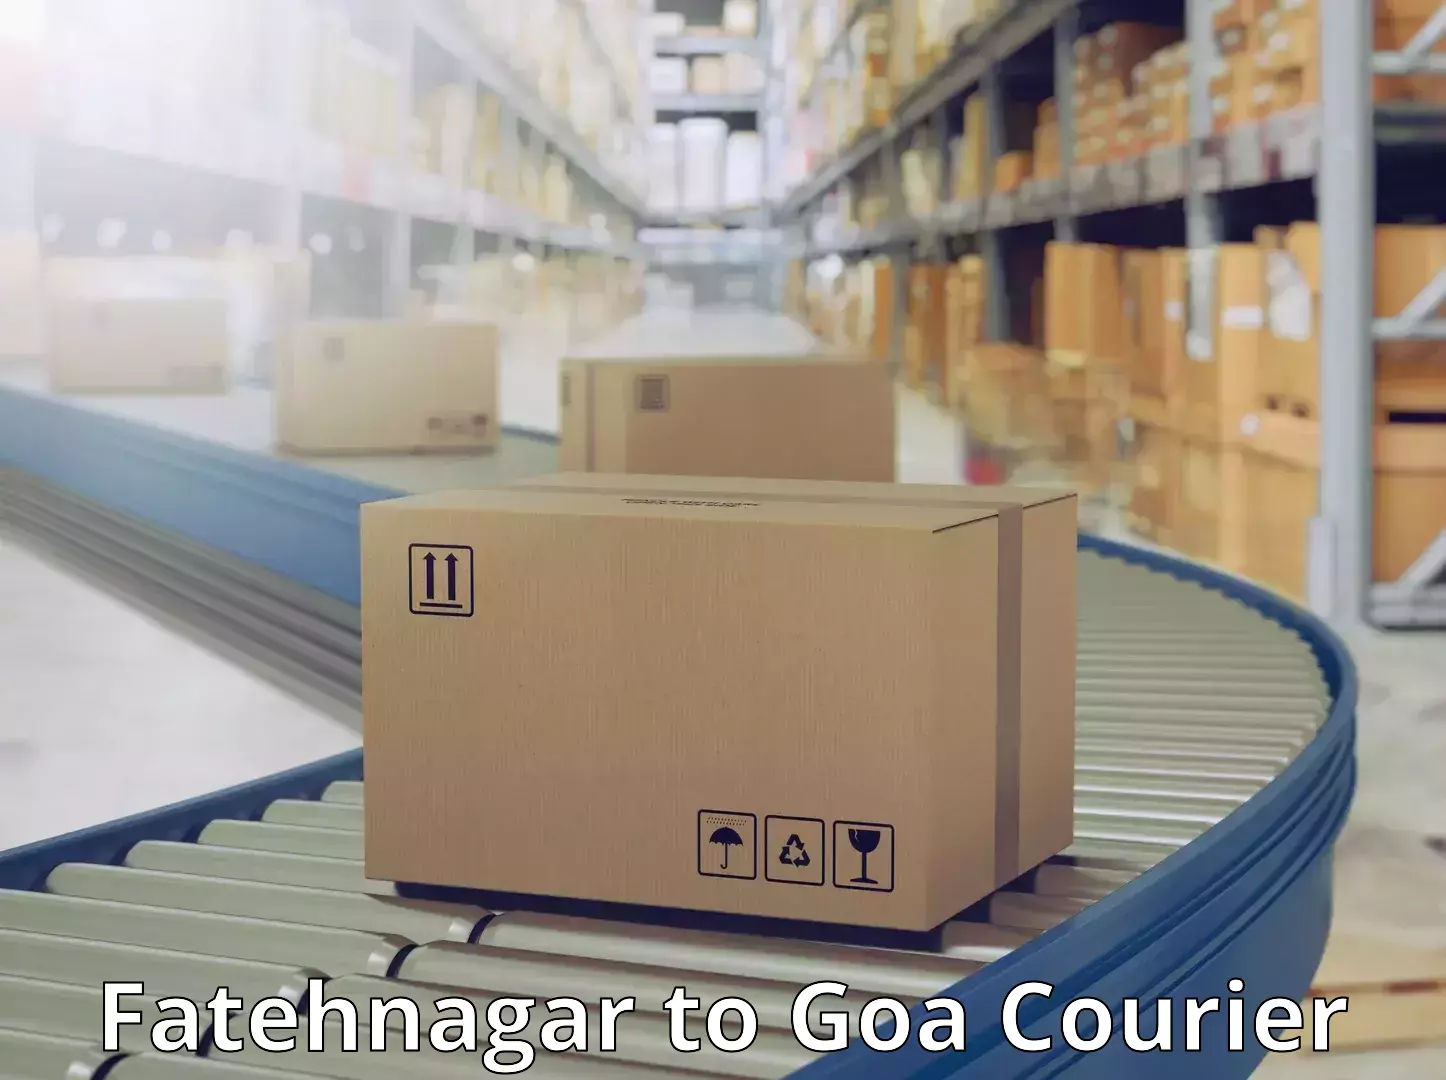 Quality courier partnerships Fatehnagar to Ponda